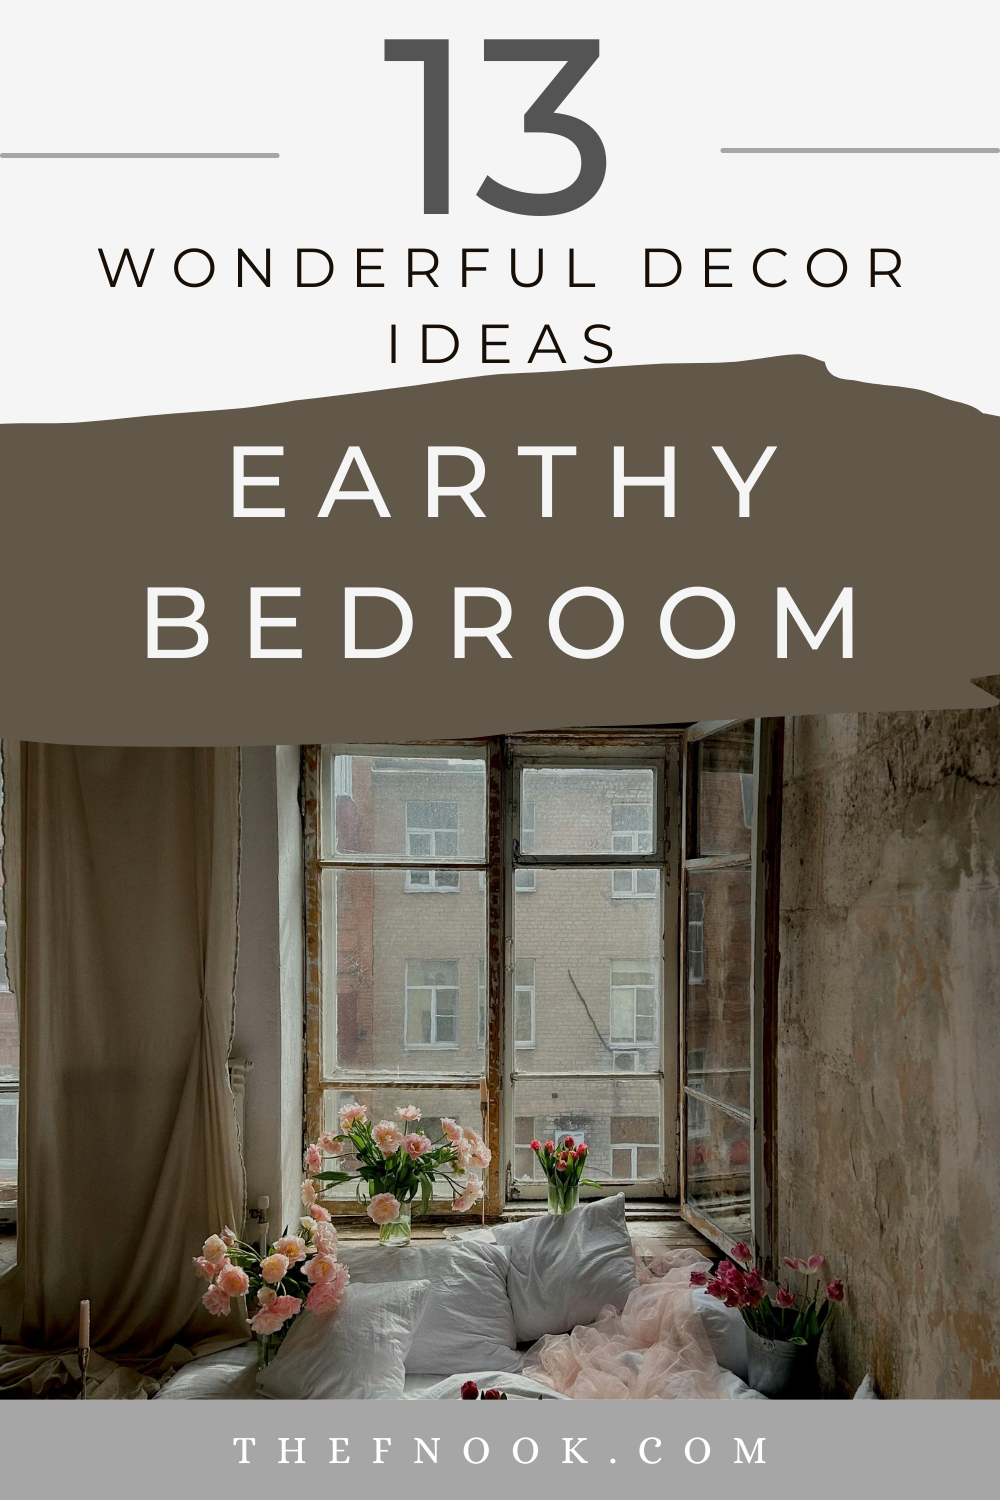 13 Wonderful Decor Ideas for an Earthy Bedroom